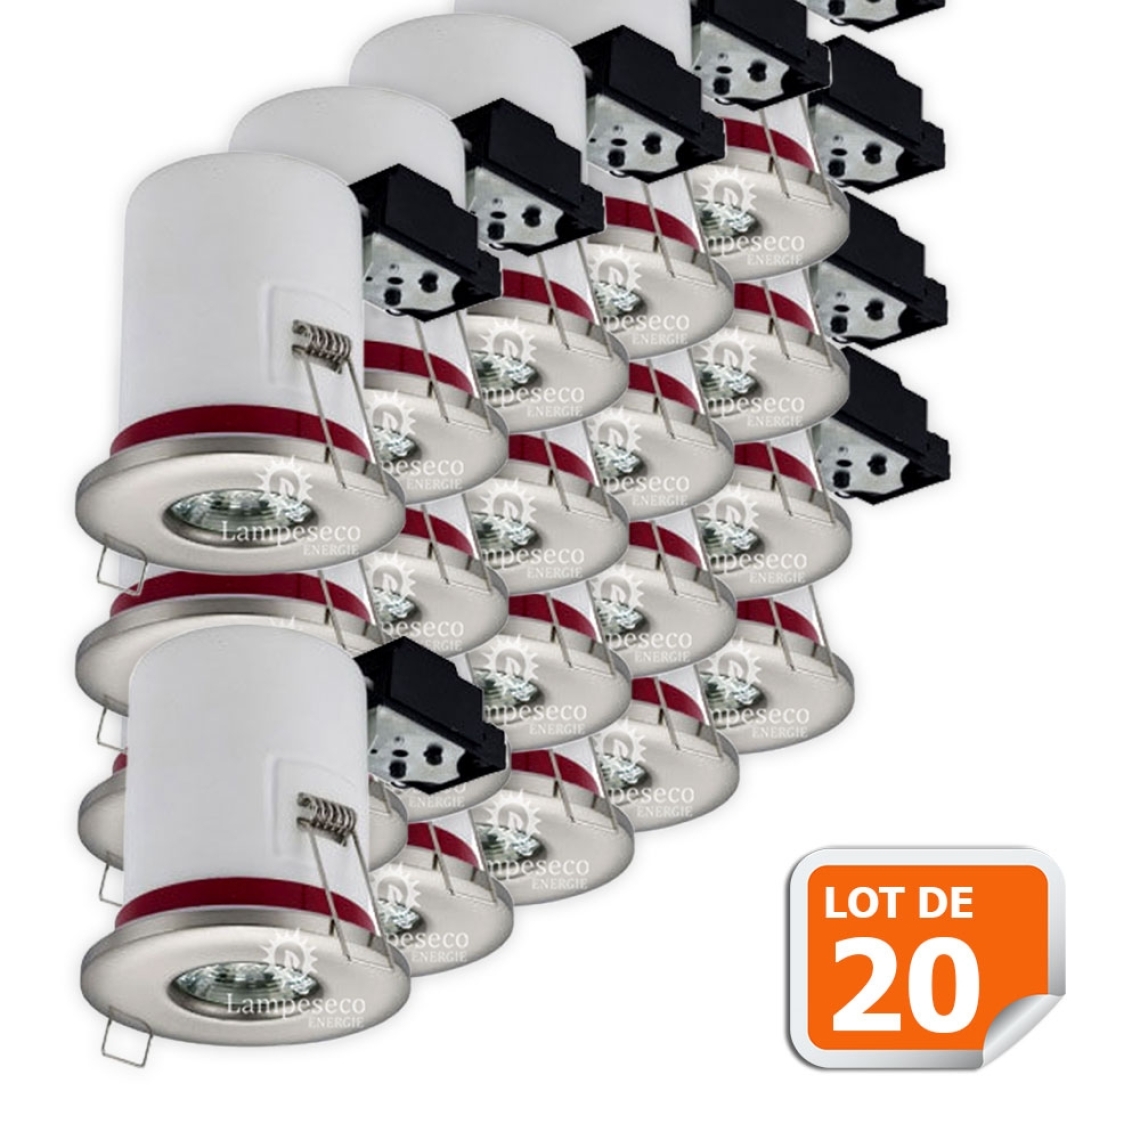 Lampesecoenergie - Lot de 20 Support de spot BBC Etanche IP65 Inox 87mm avec douille GU10 automatique ref. 830 - Moulures et goulottes